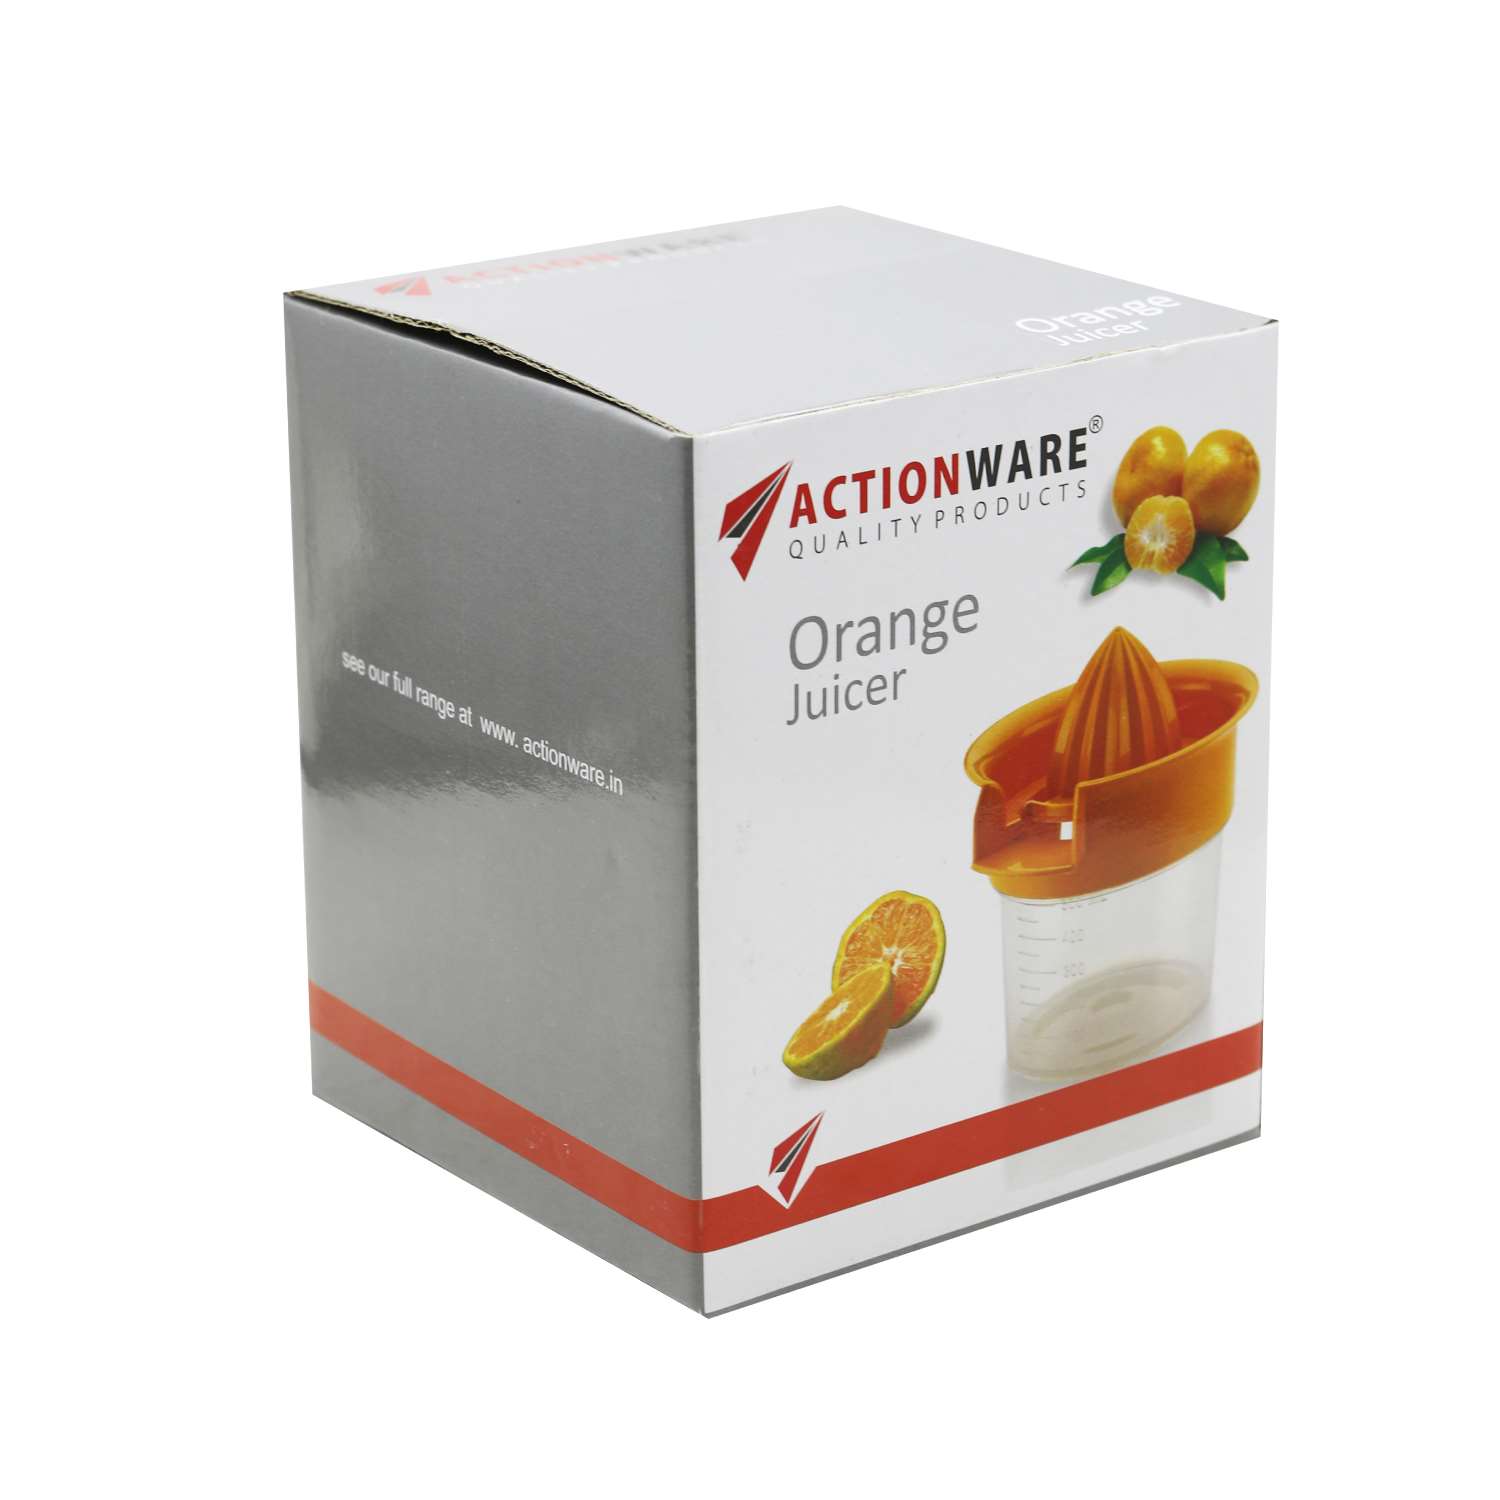 Actionware Plastic Orange Juicer White